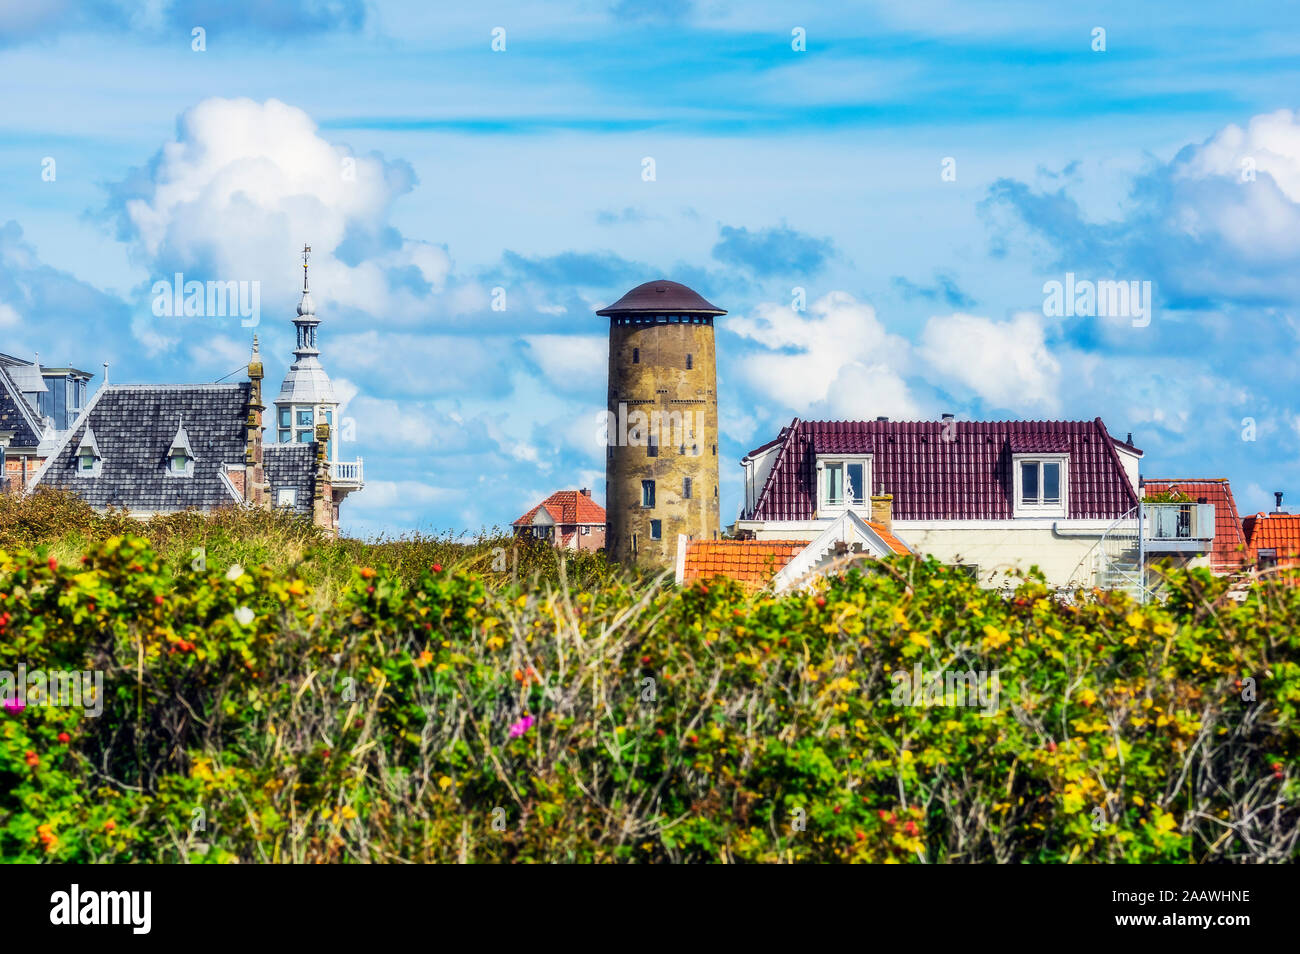 Niederlande, Zeeland, Domburg, Stadtbild mit alten Wasserturm Stockfoto